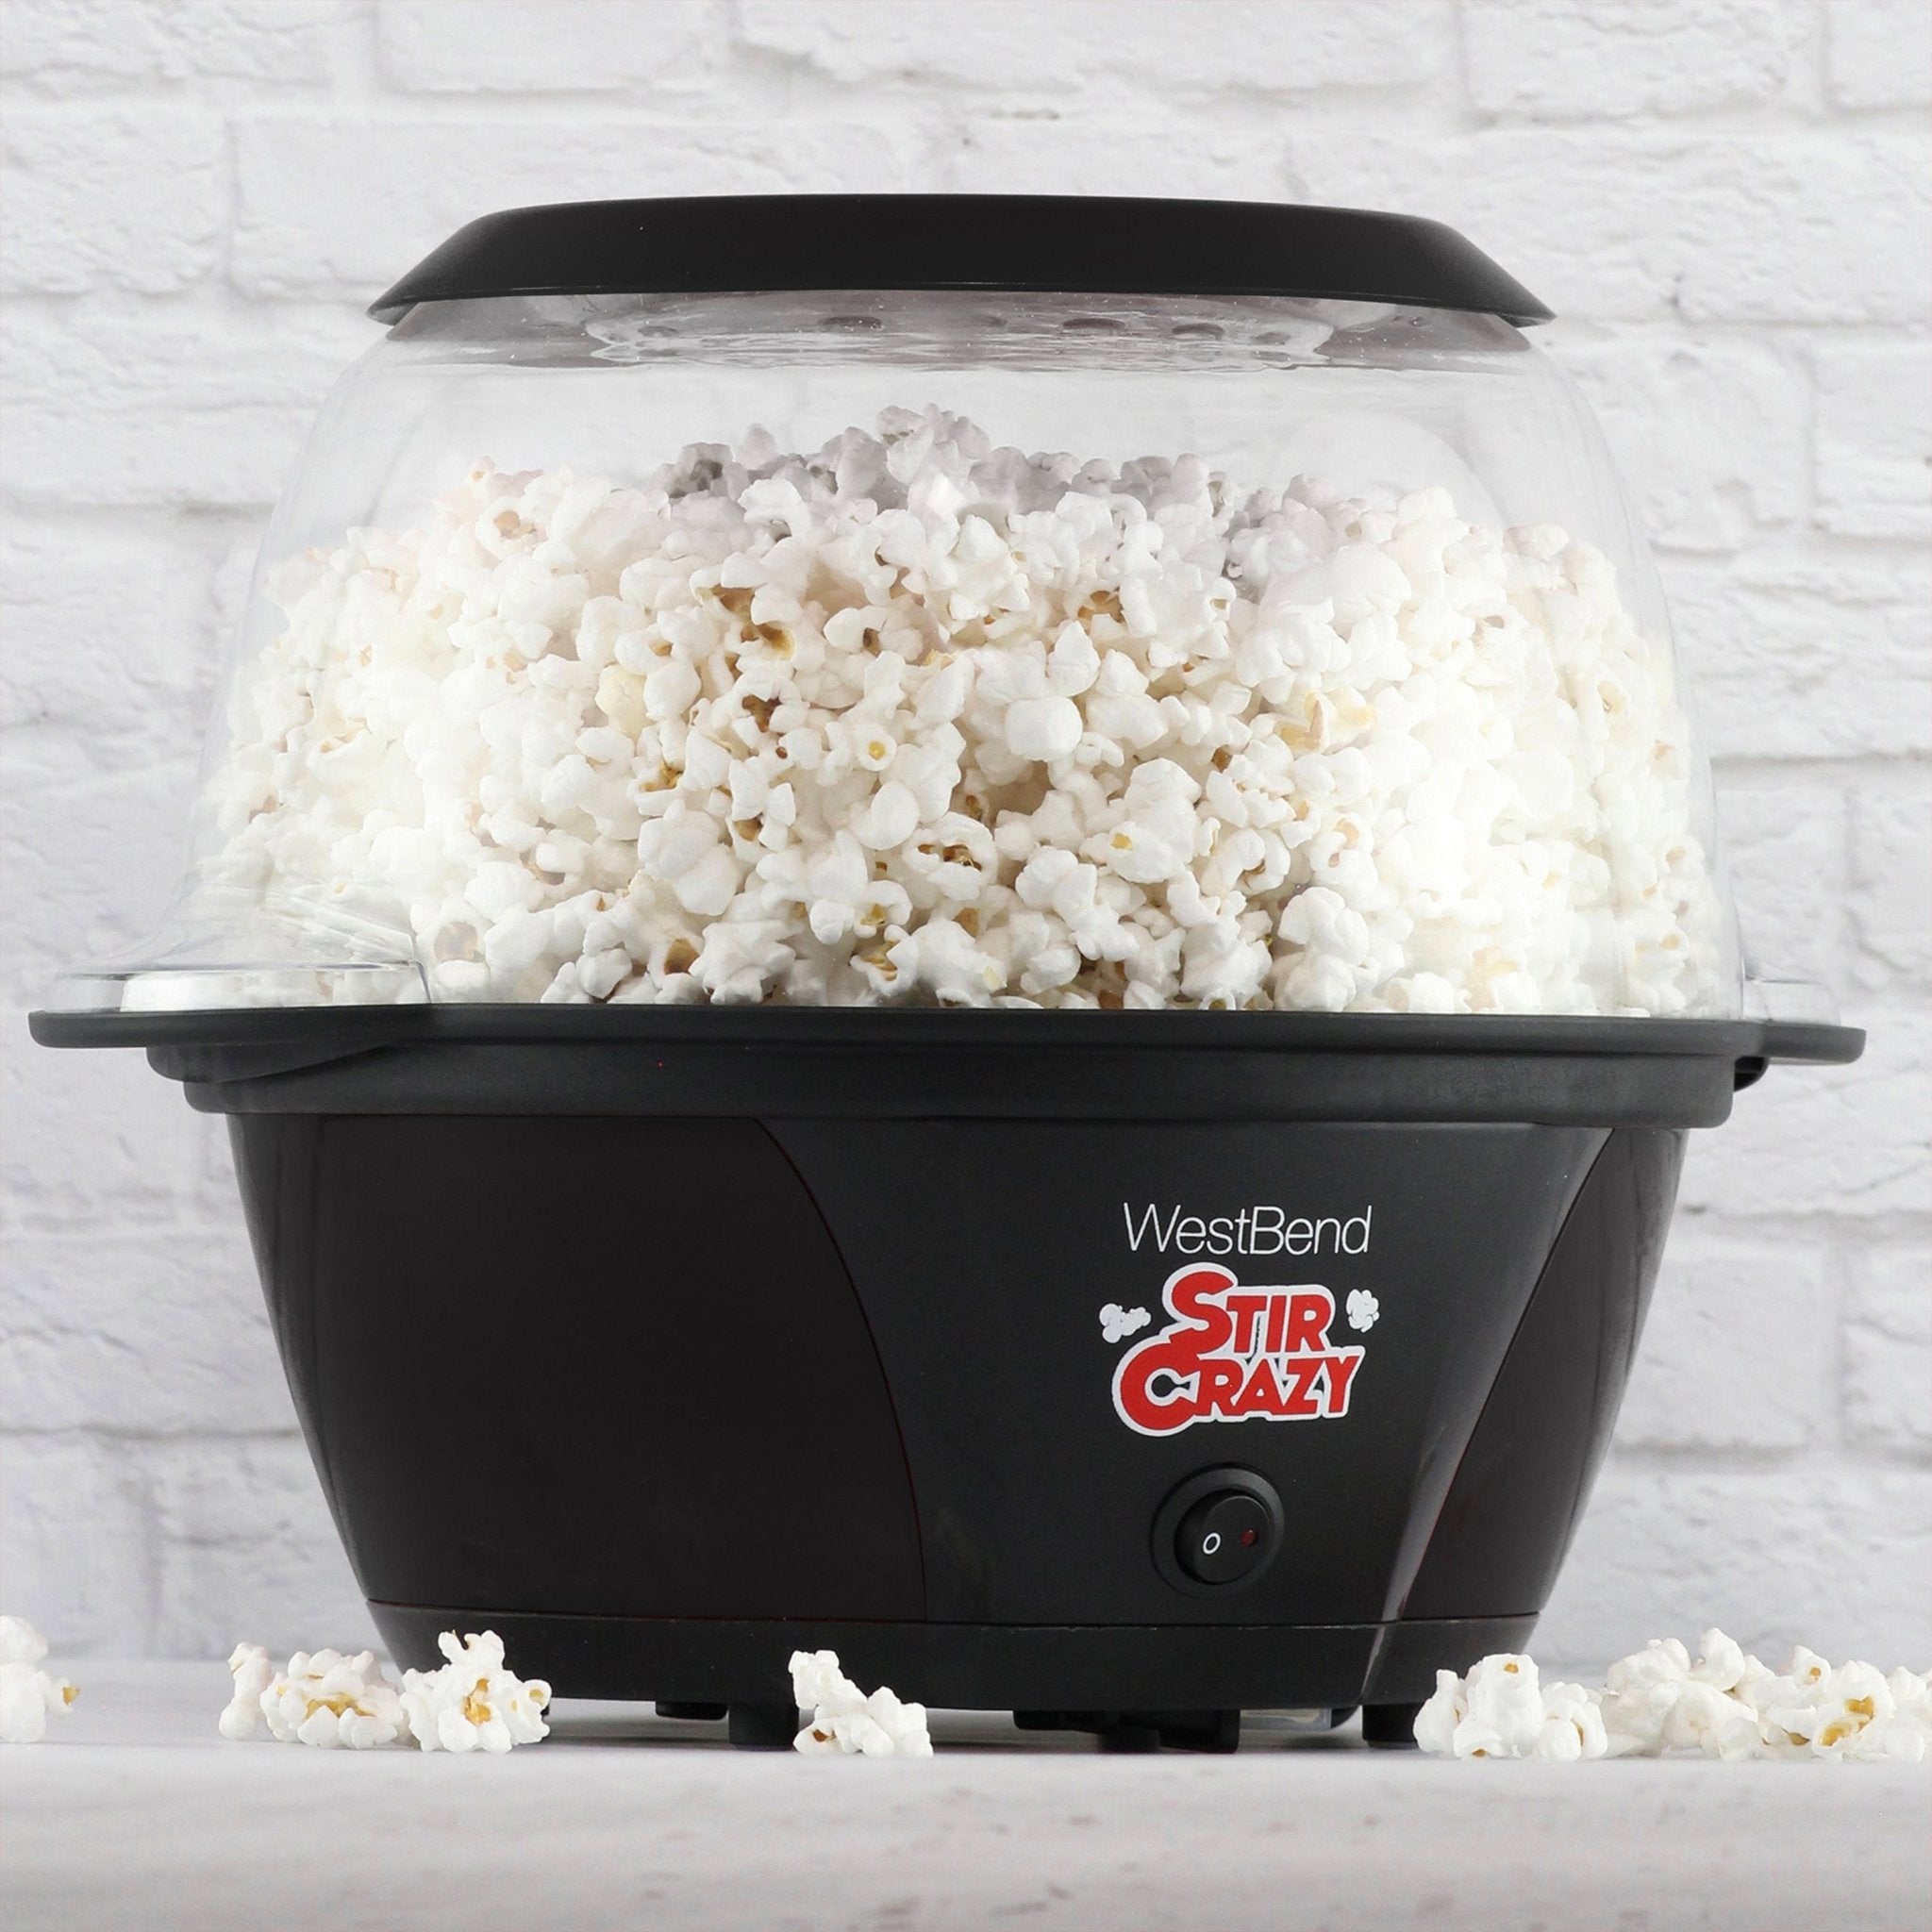 West Bend Stir Crazy 6 Qt. Popcorn Machine, in Black PCWBSCBK13